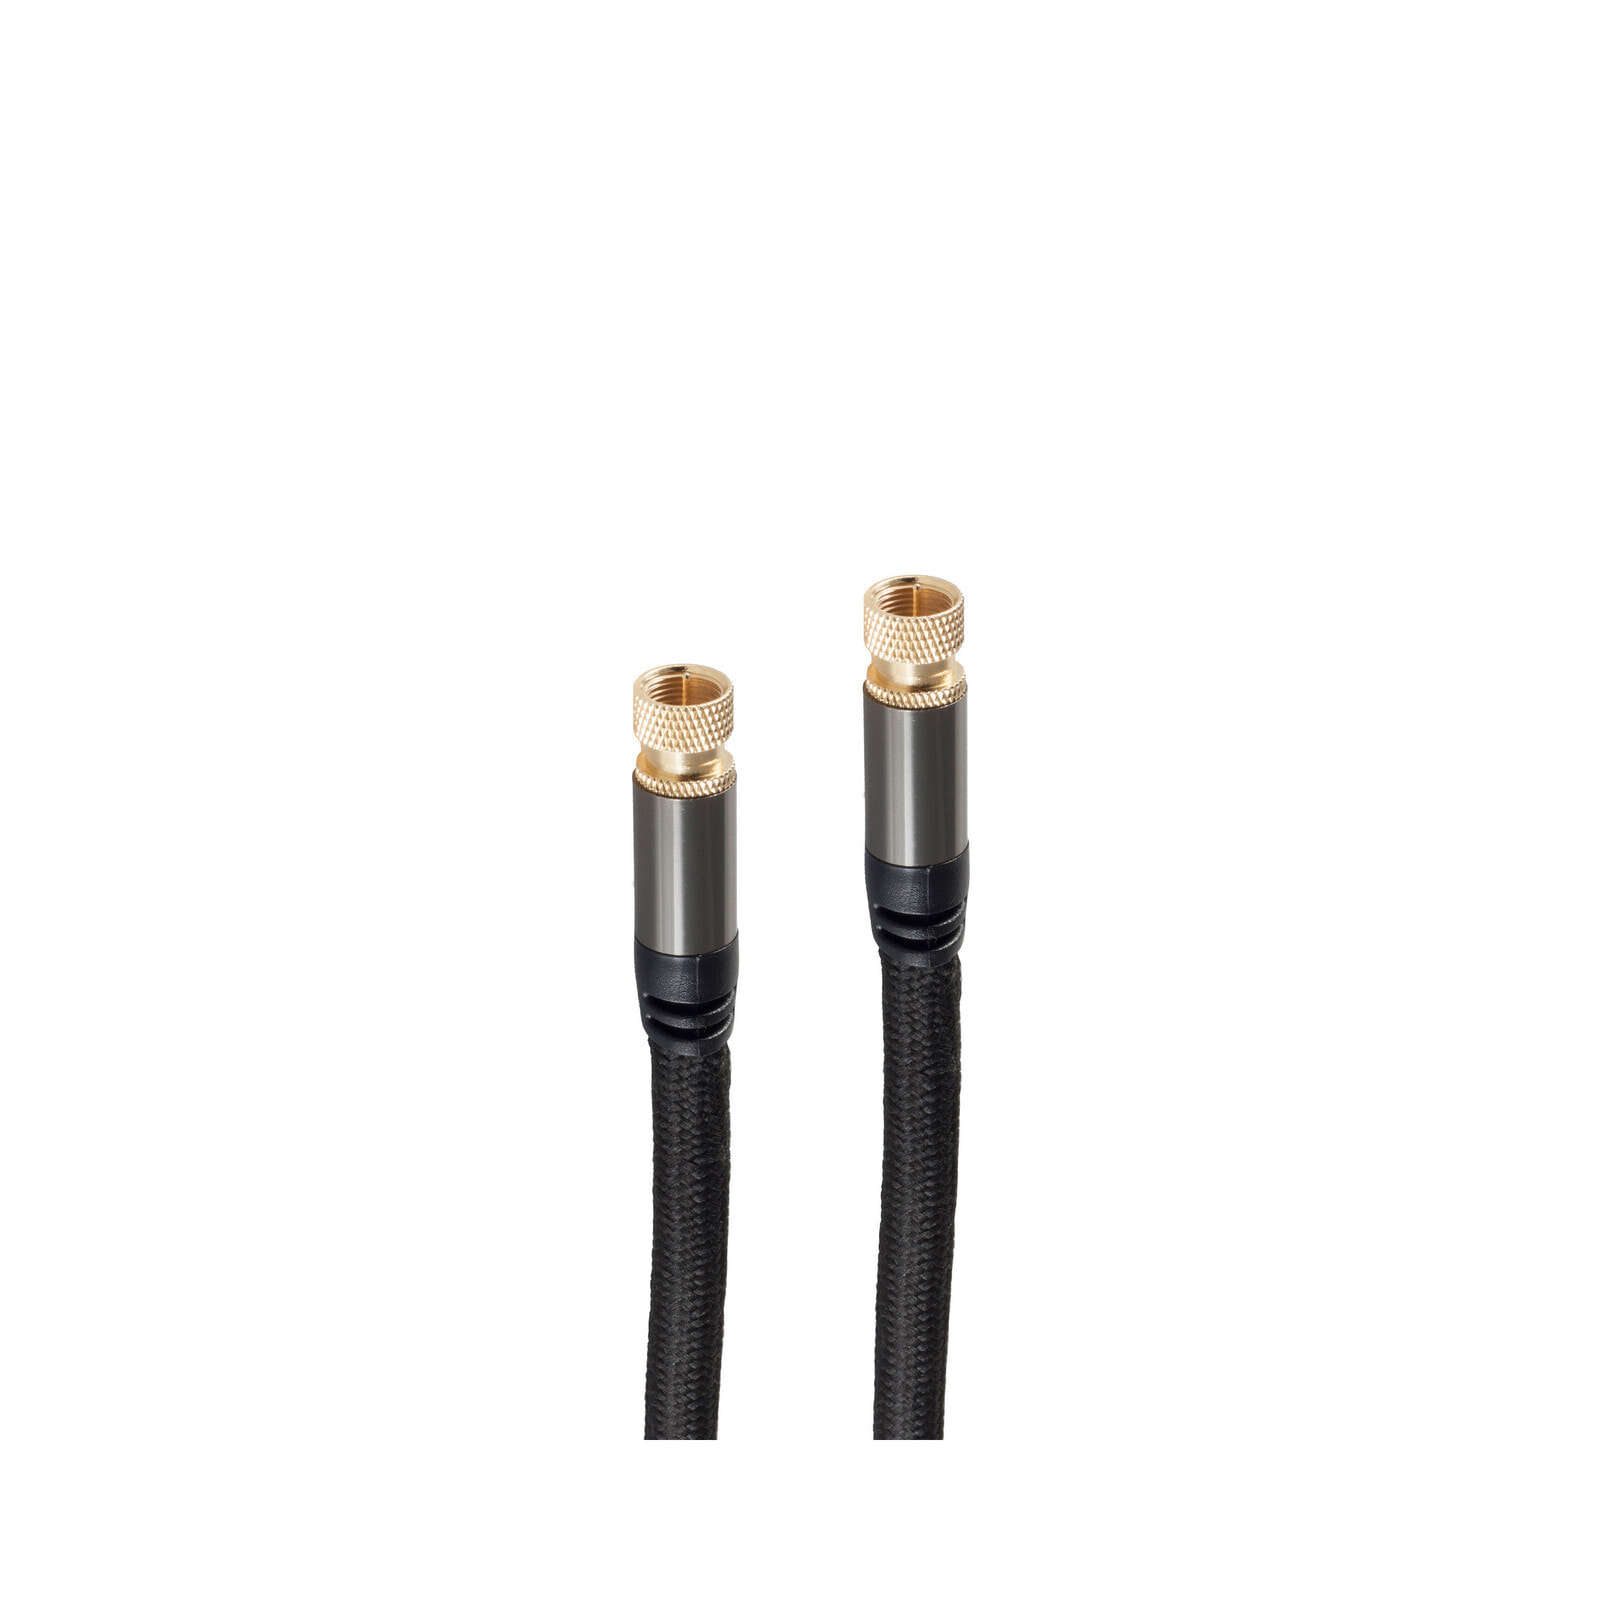 S-Conn BS20-55255 коаксиальный кабель 2,5 m F Черный